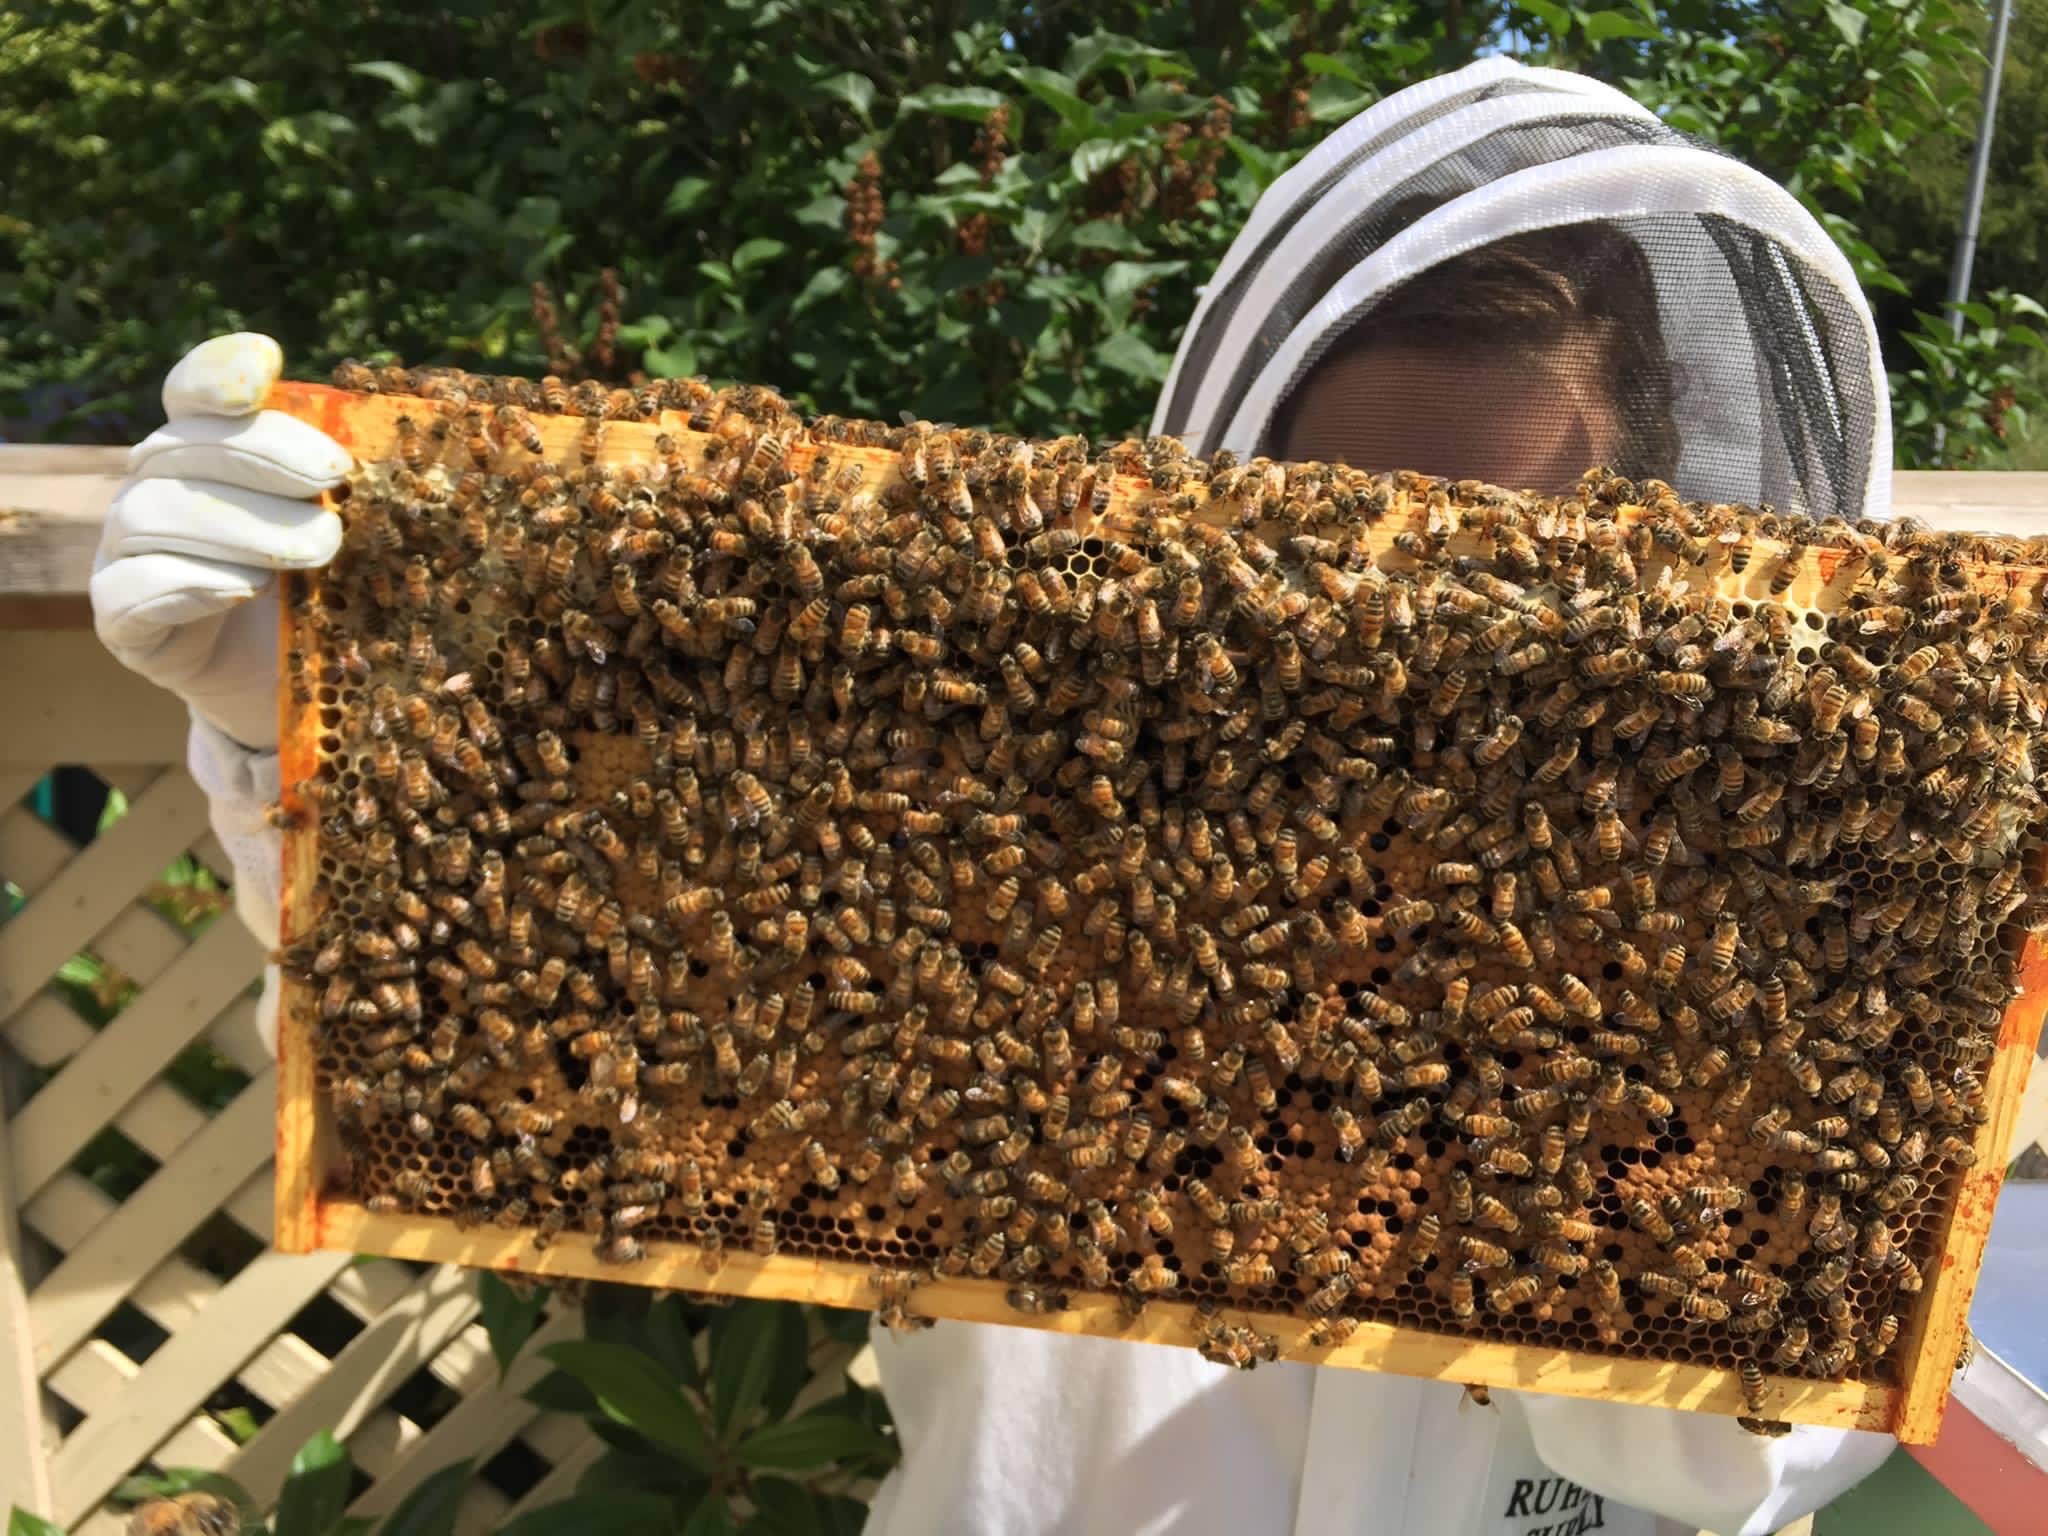 Justine beekeeping